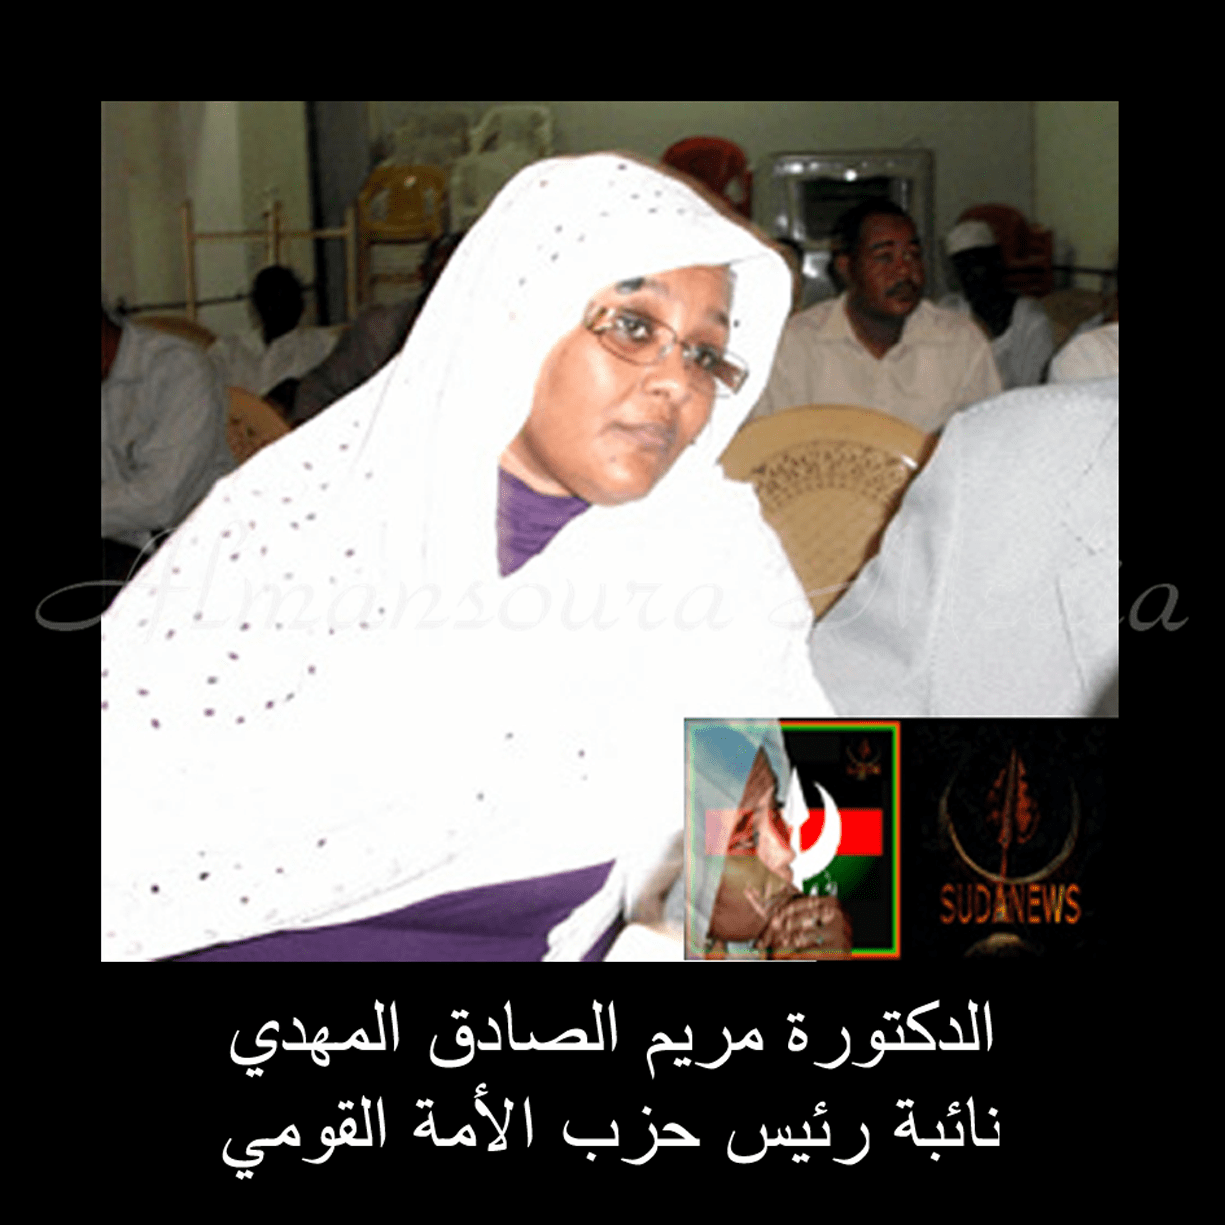 الحبيبة الدكتورة مريم الصادق المهدي نائبة رئيس حزب الأمة القومي للعلاقات الخارجية